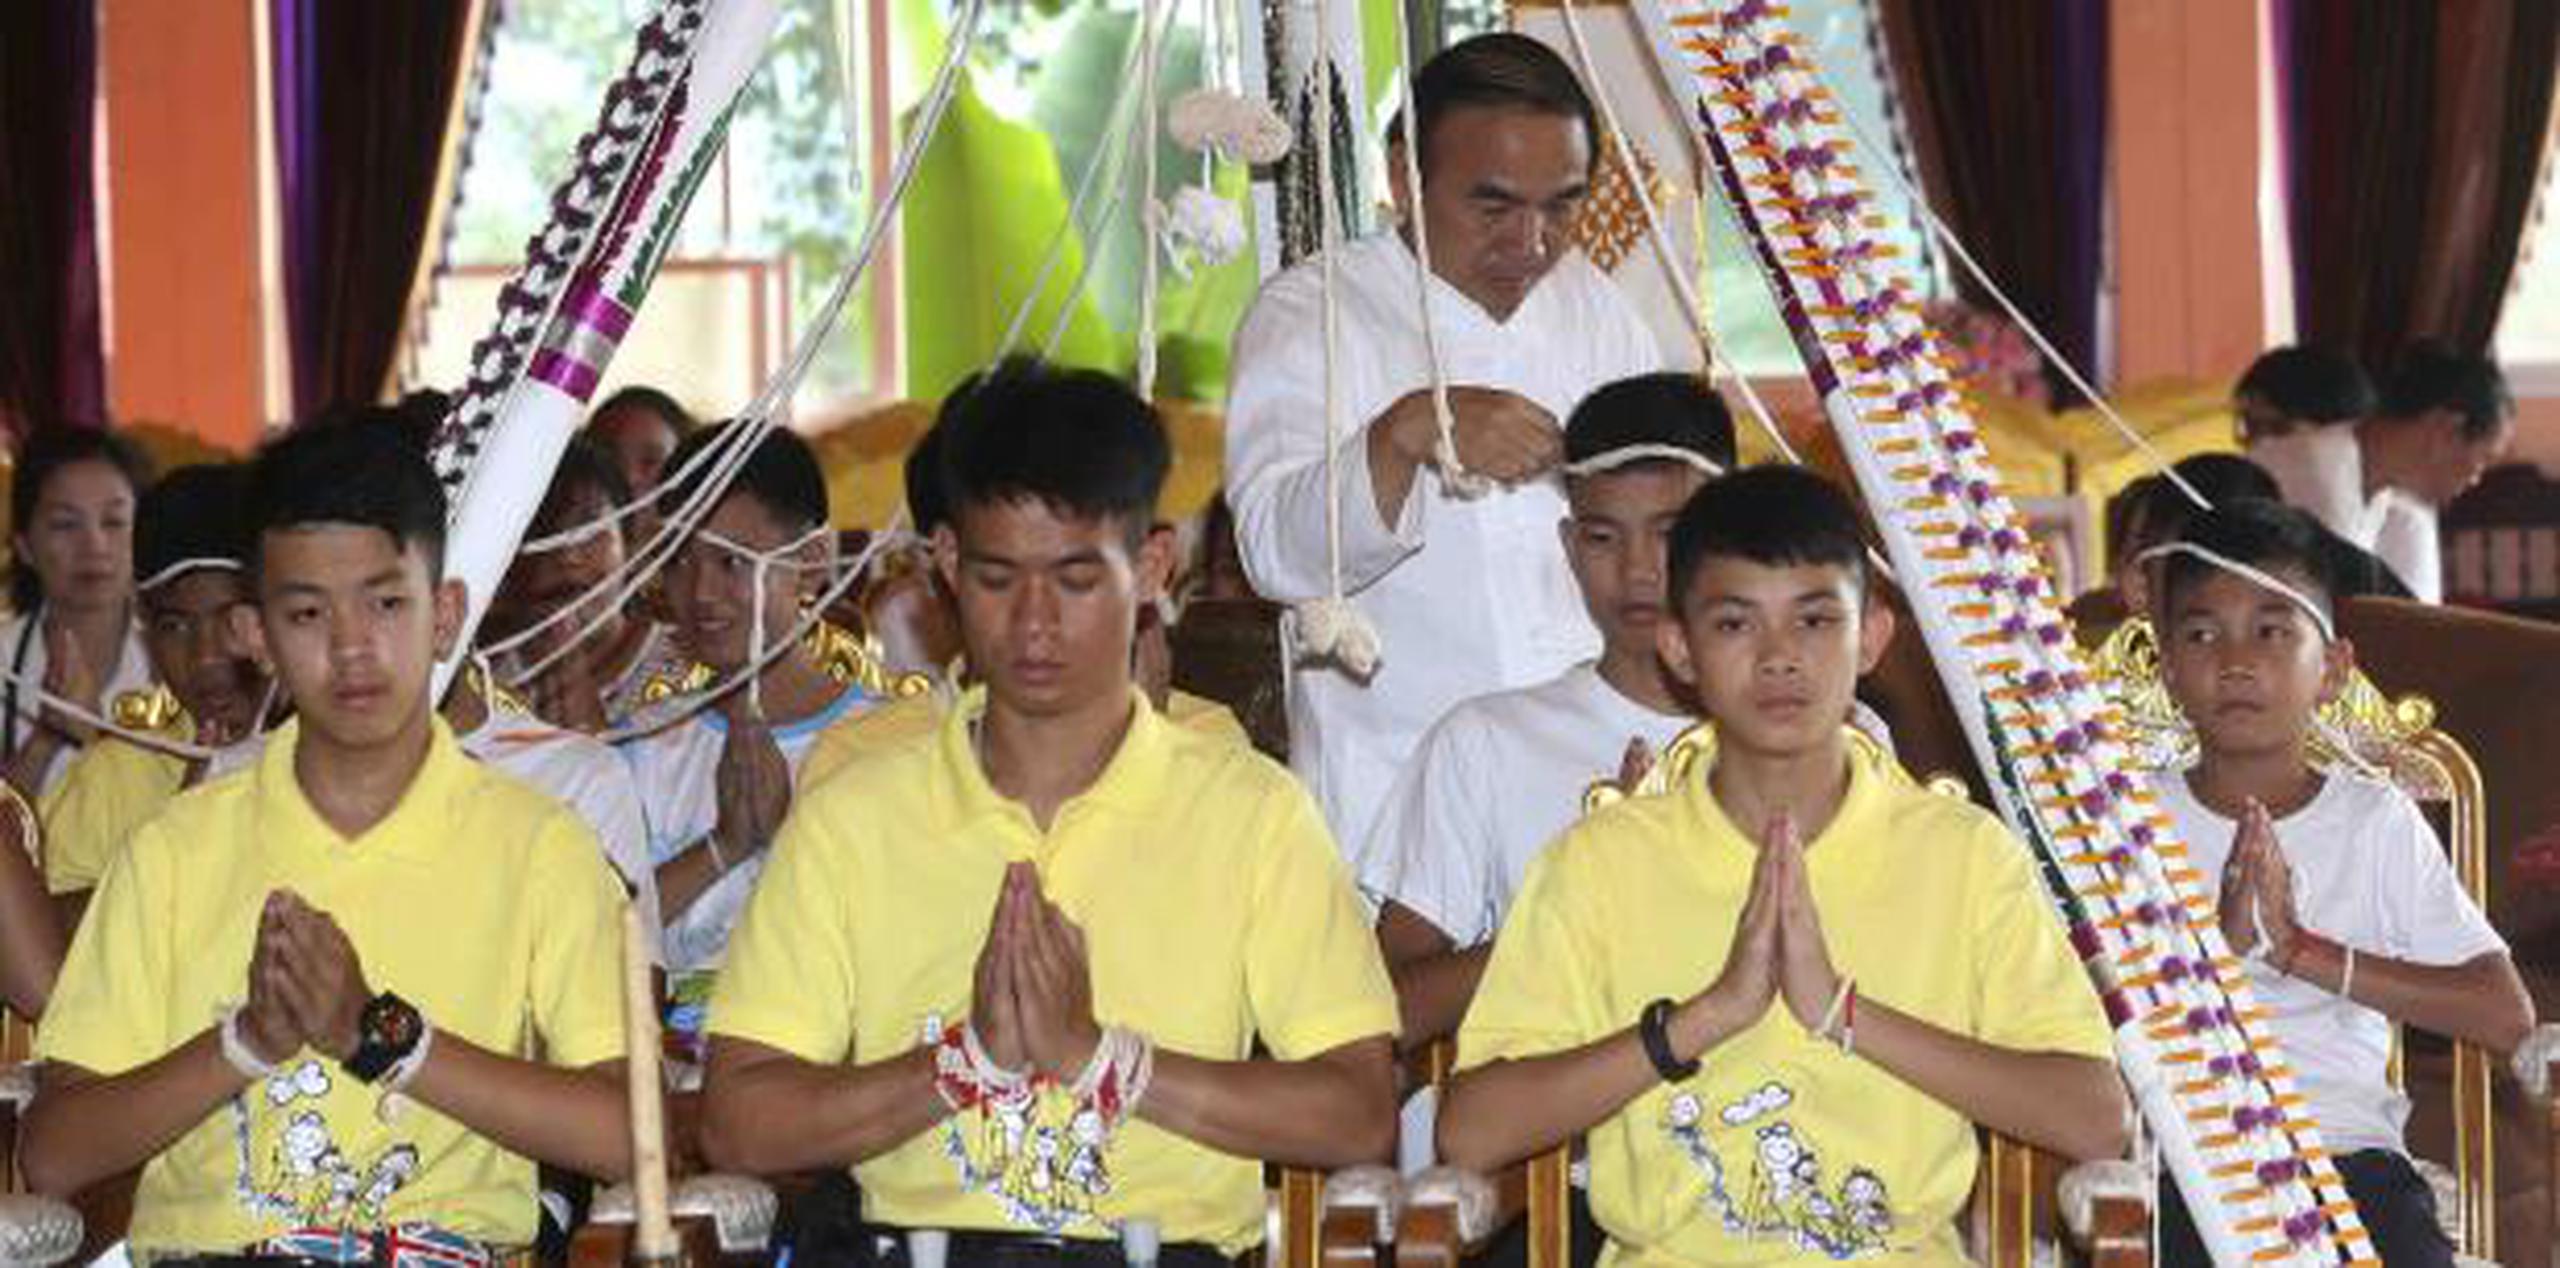 Los niños rescatados asistieron ayer a una ceremonia budista. (AP)